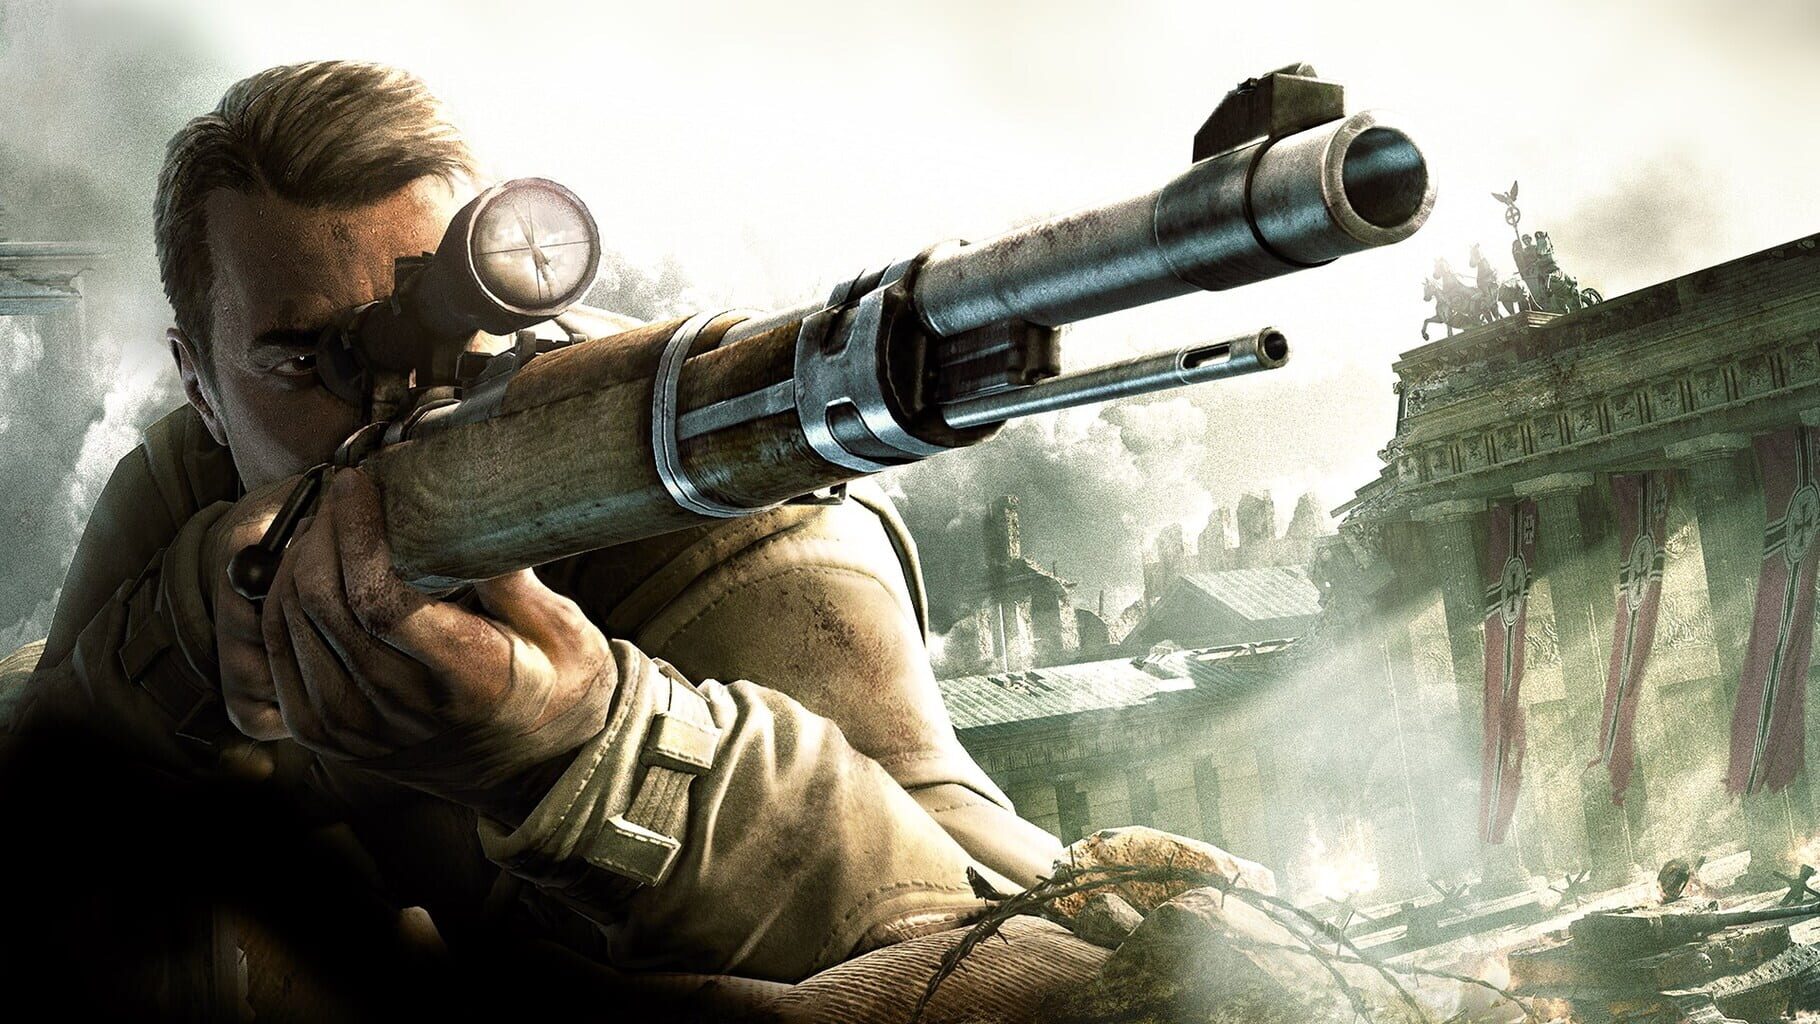 Artwork for Sniper Elite V2 Remastered